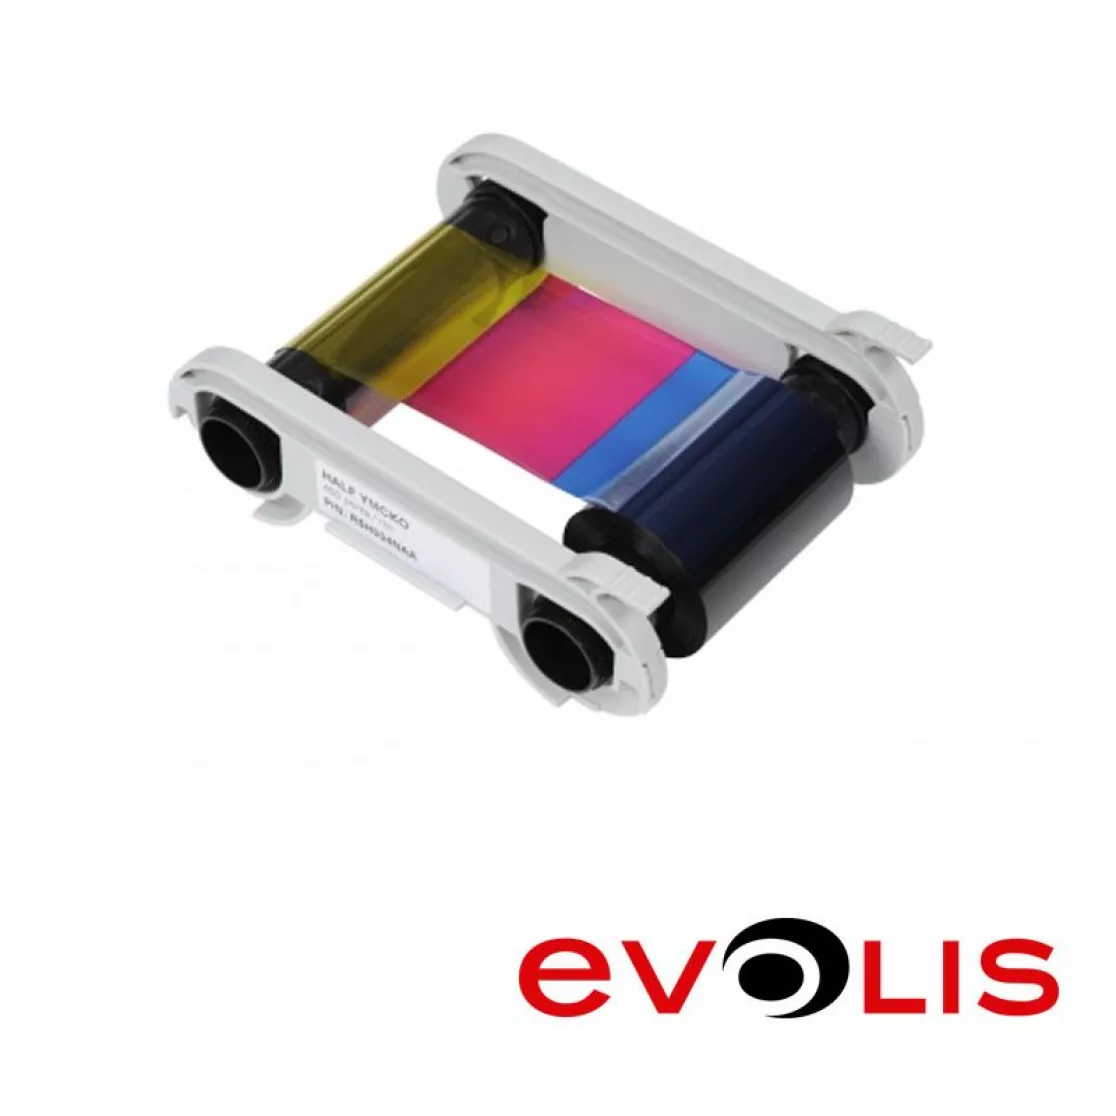 Film Colorful for card printer Evolis Primacy